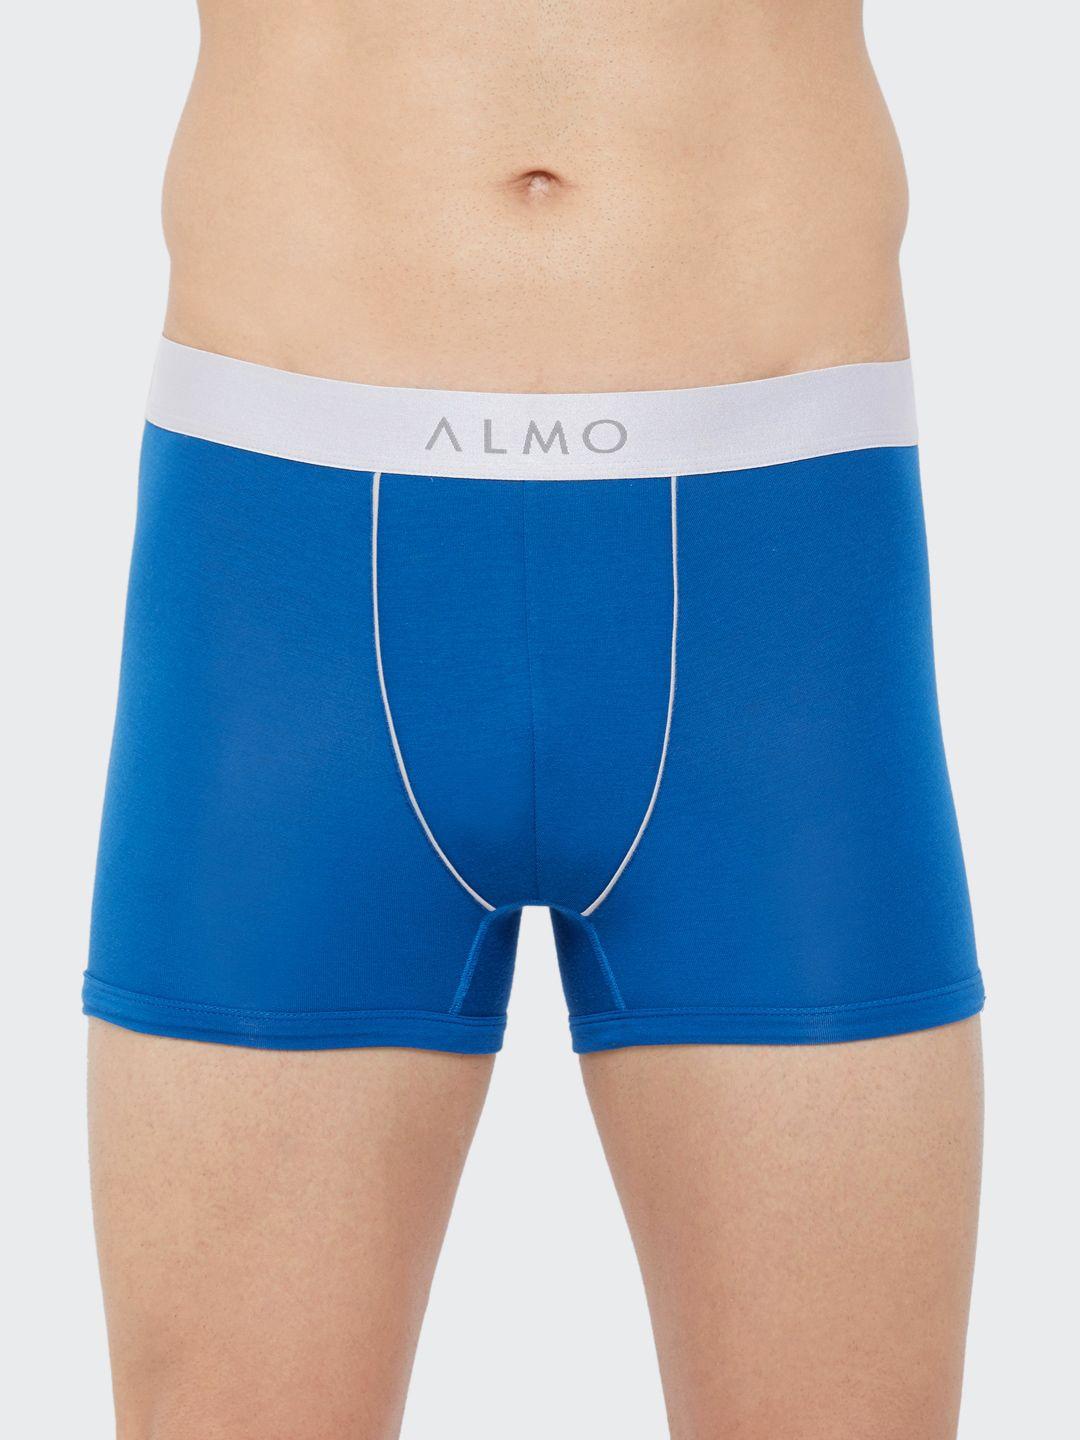 almo-wear-men-blue-solid-slim-fit-dario-classic-short-trunks-fabio-t-107